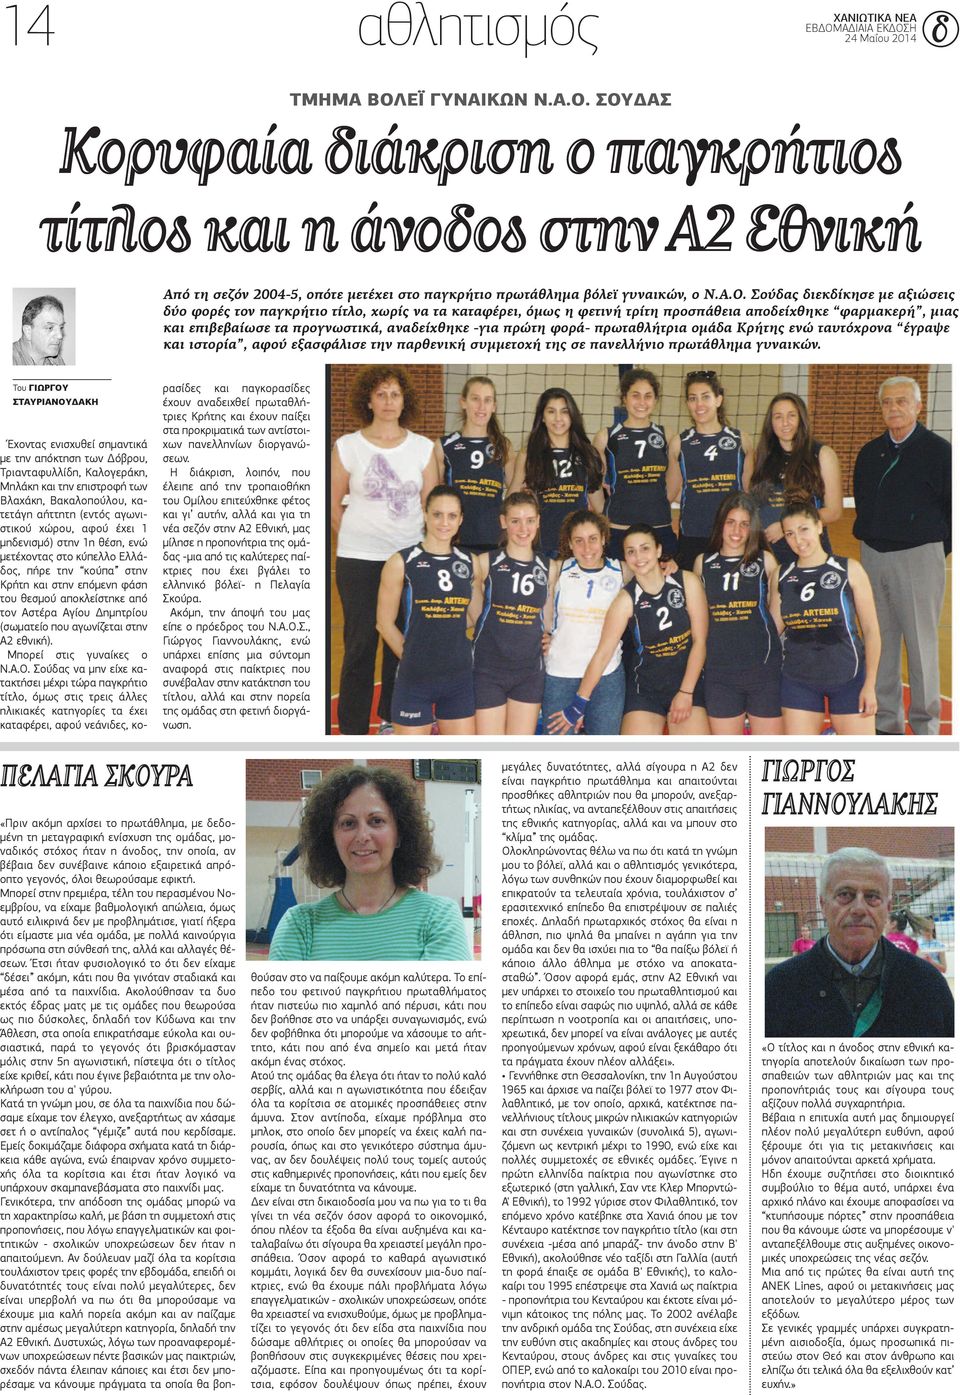 πρώτη φορά- πρωταθλήτρια ομάδα Κρήτης ενώ ταυτόχρονα έγραψε και ιστορία, αφού εξασφάλισε την παρθενική συμμετοχή της σε πανελλήνιο πρωτάθλημα γυναικών.